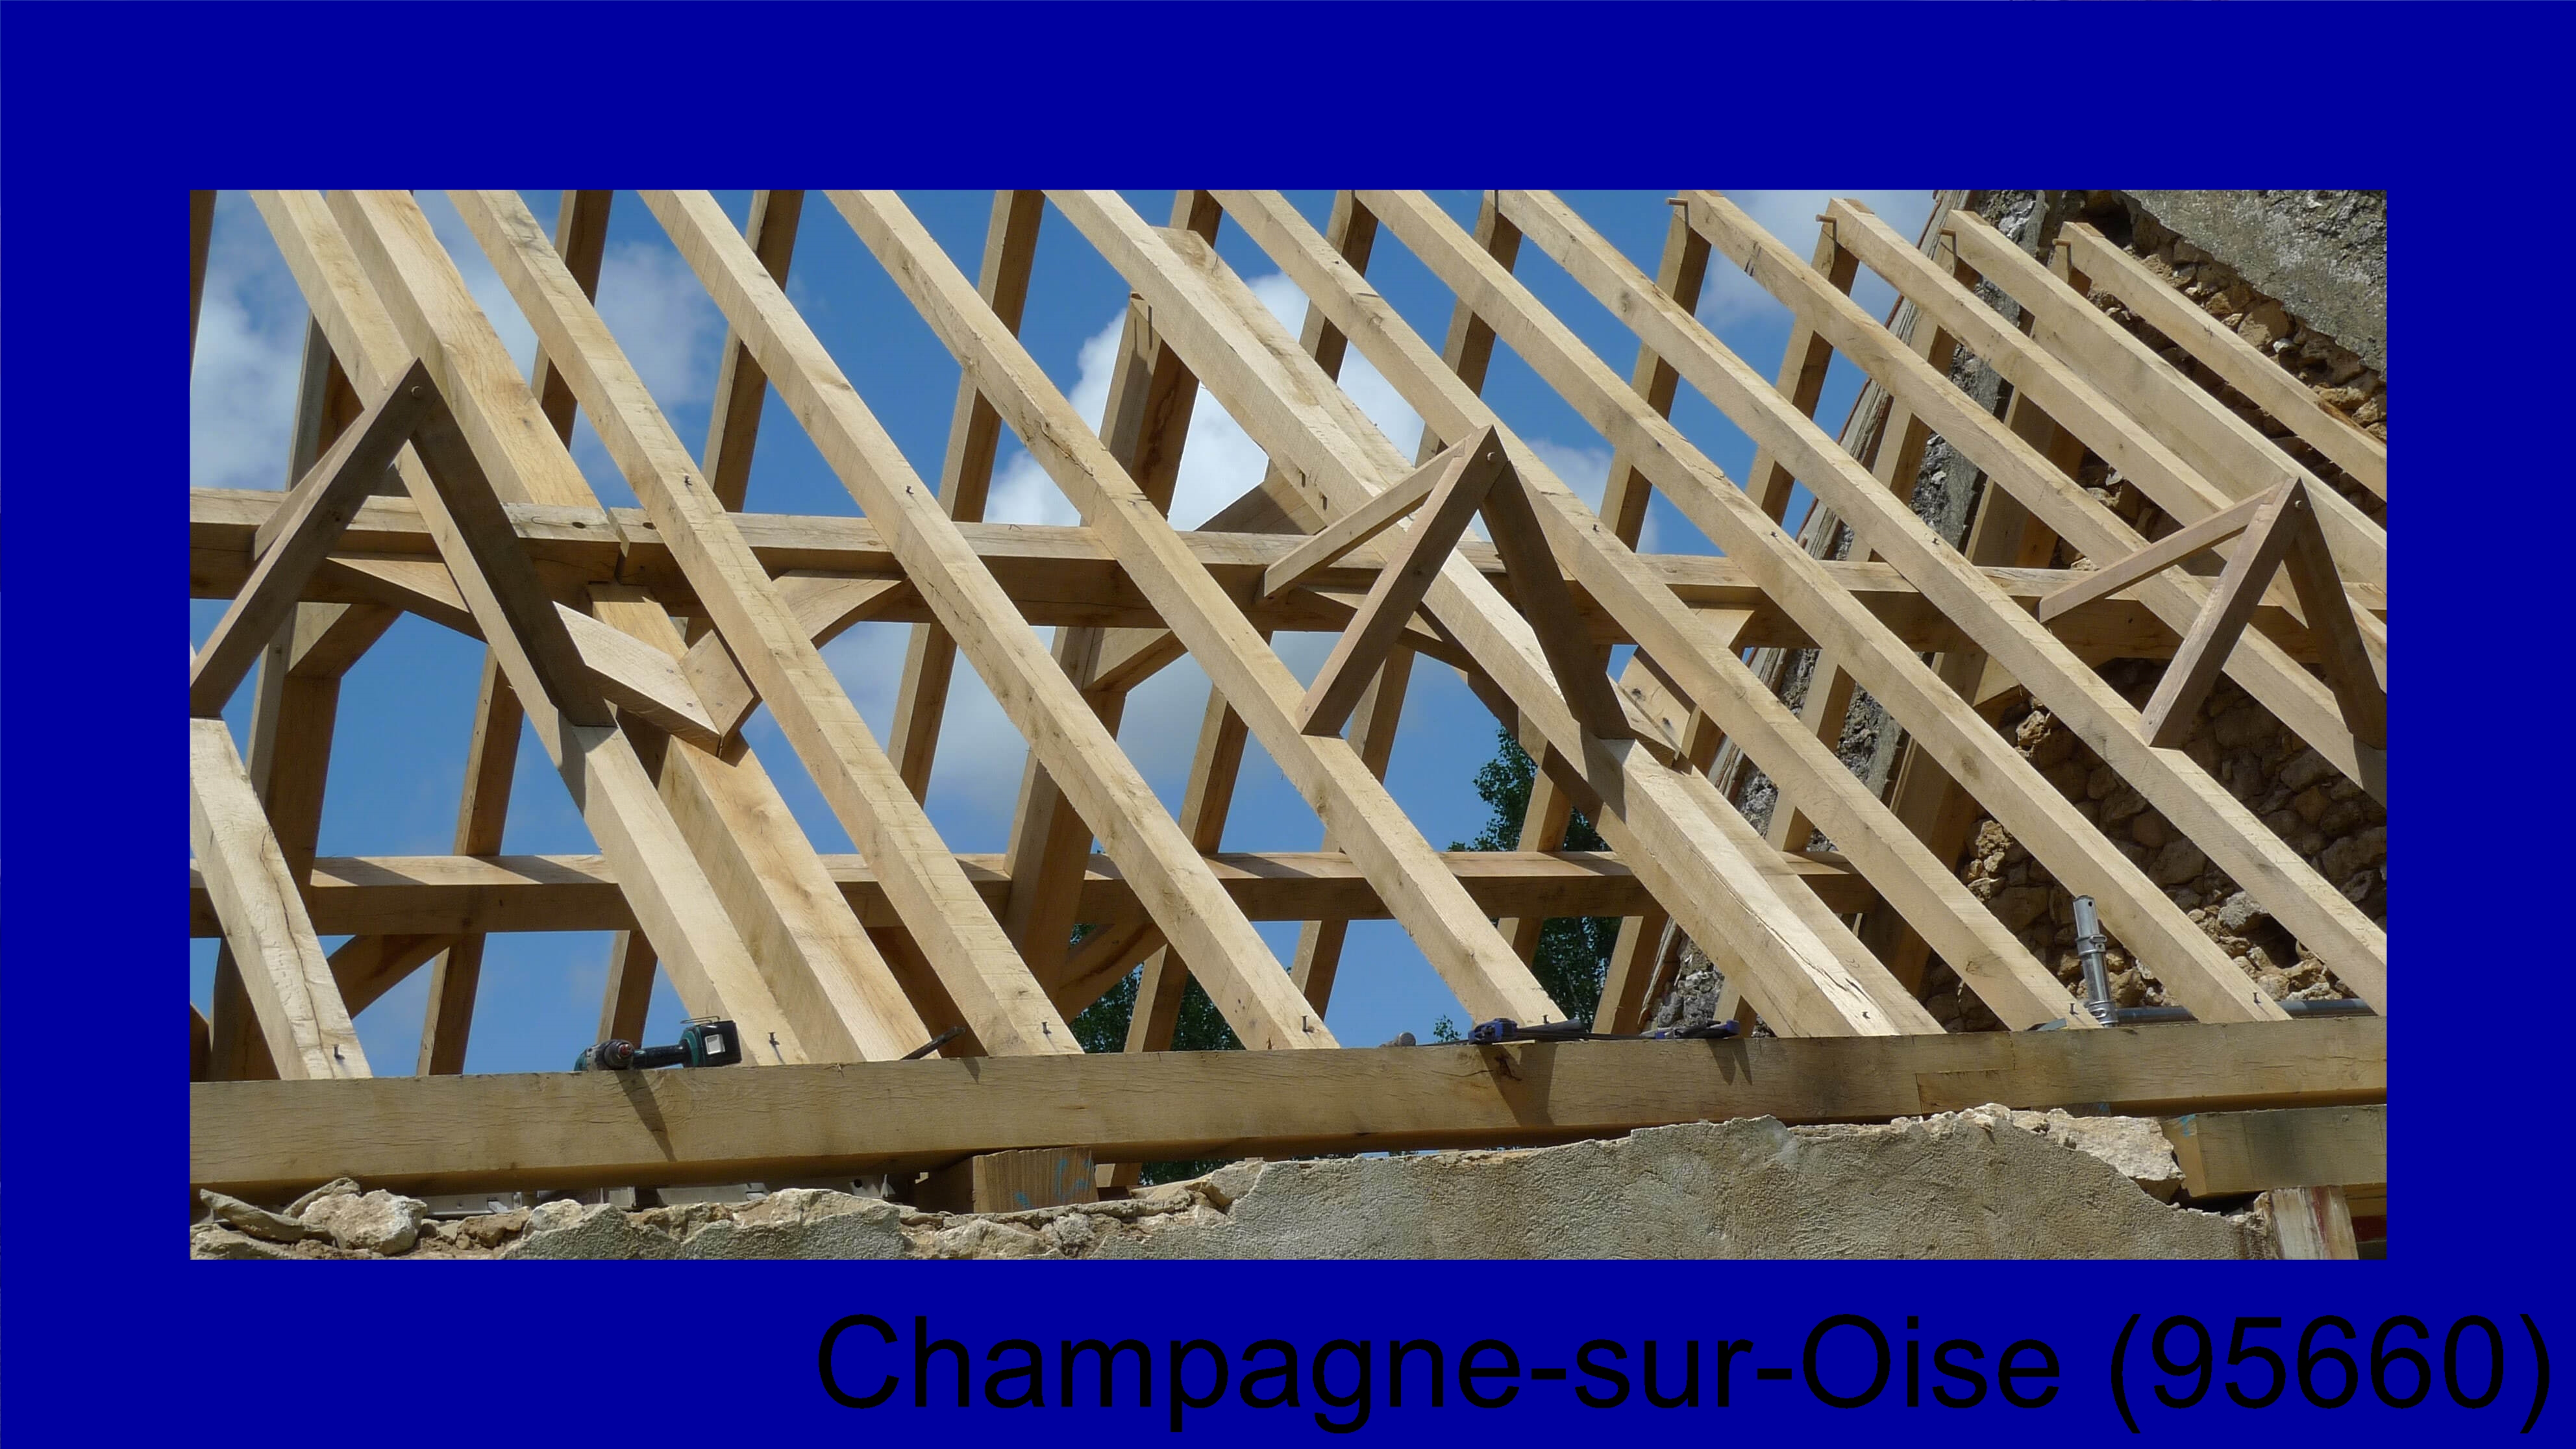 devis charpenteChampagne-sur-Oise-95660